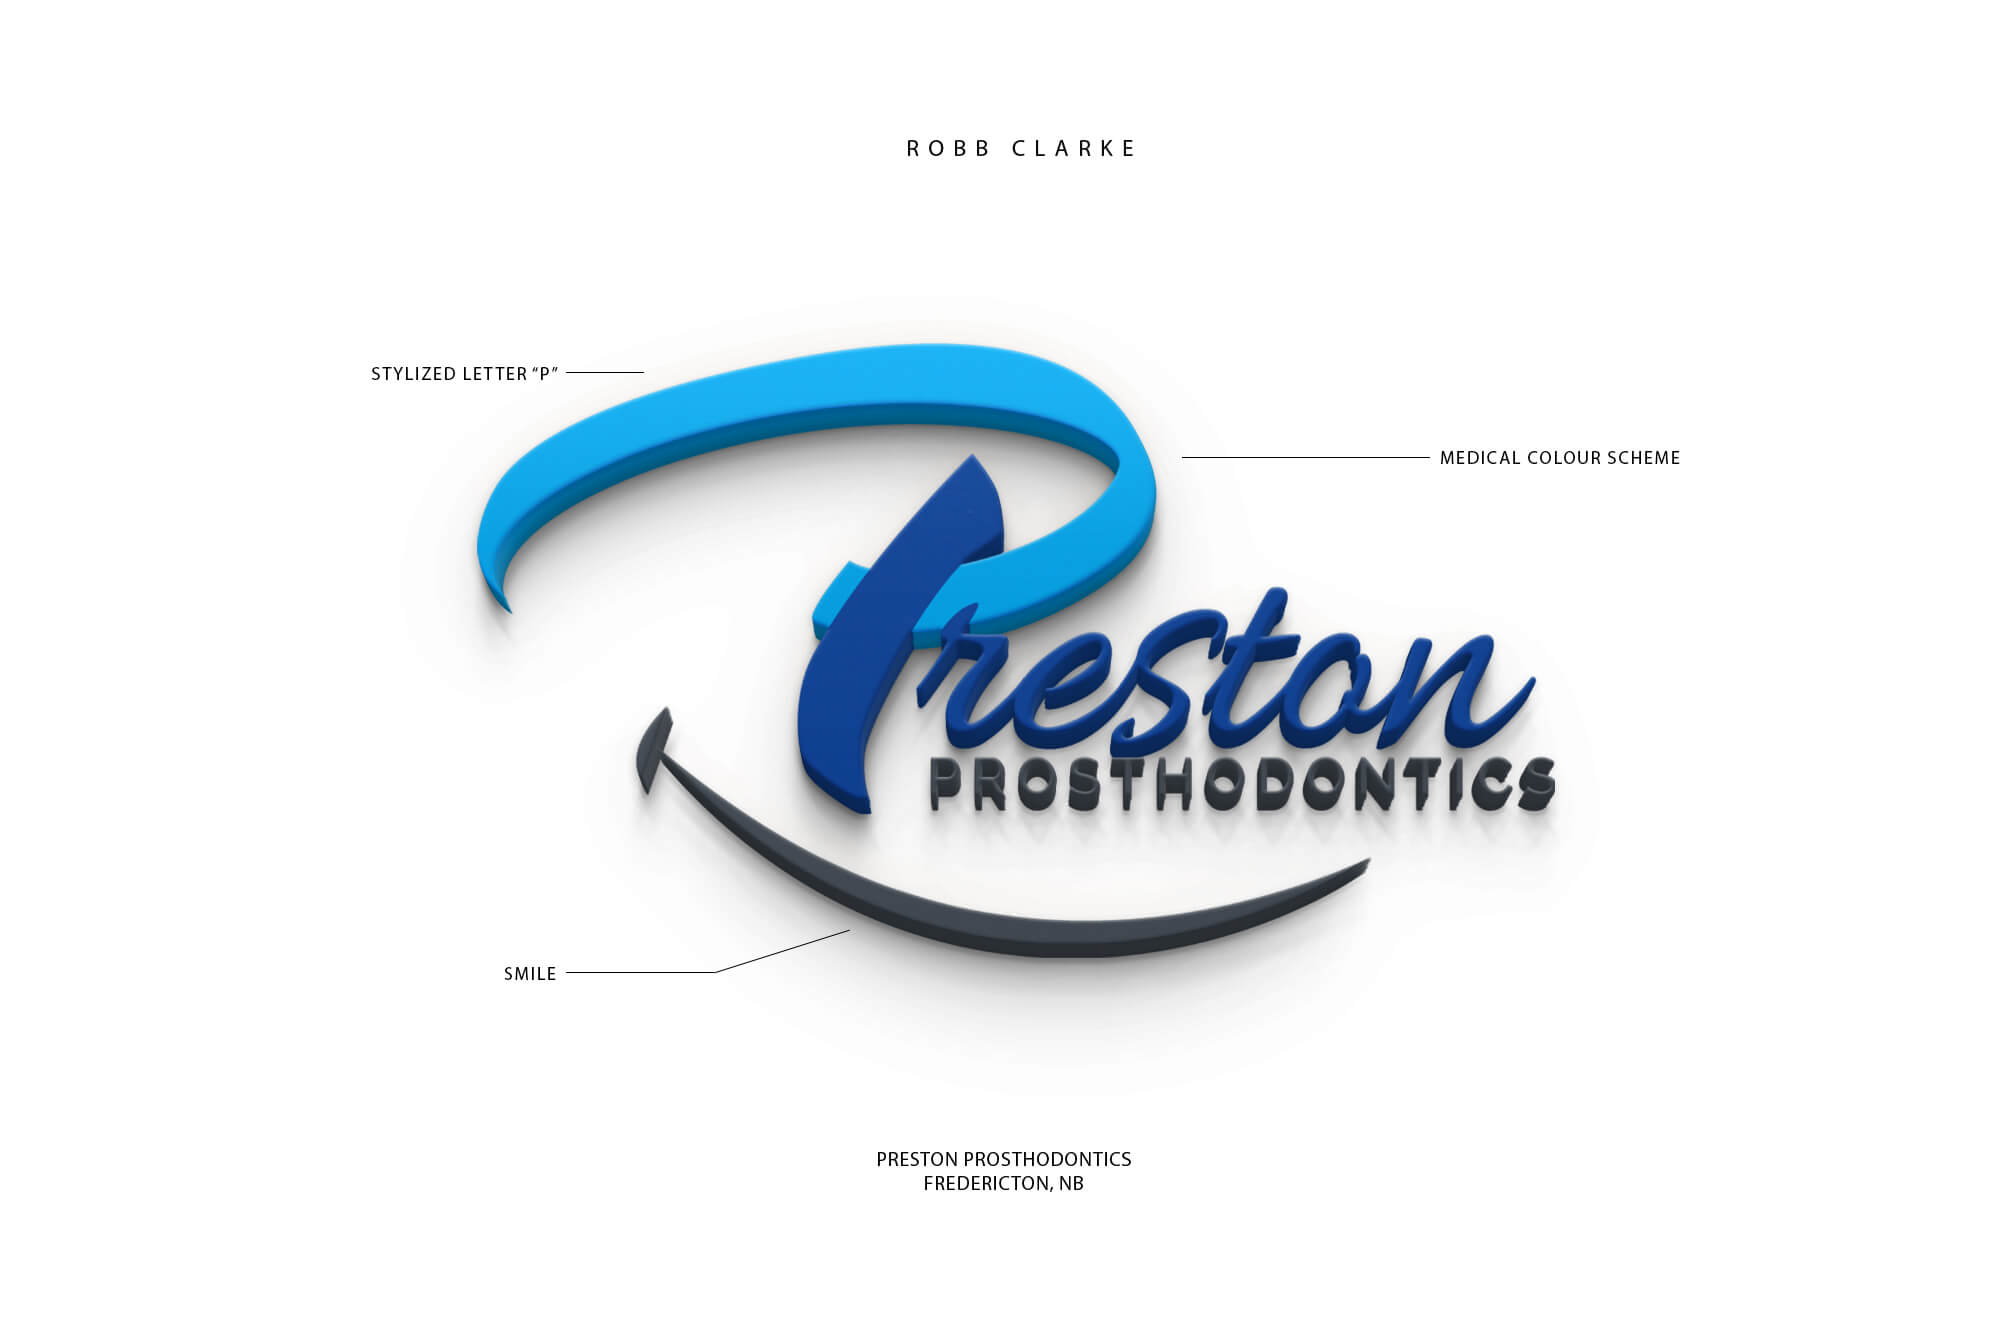 Preston Prosthodontics